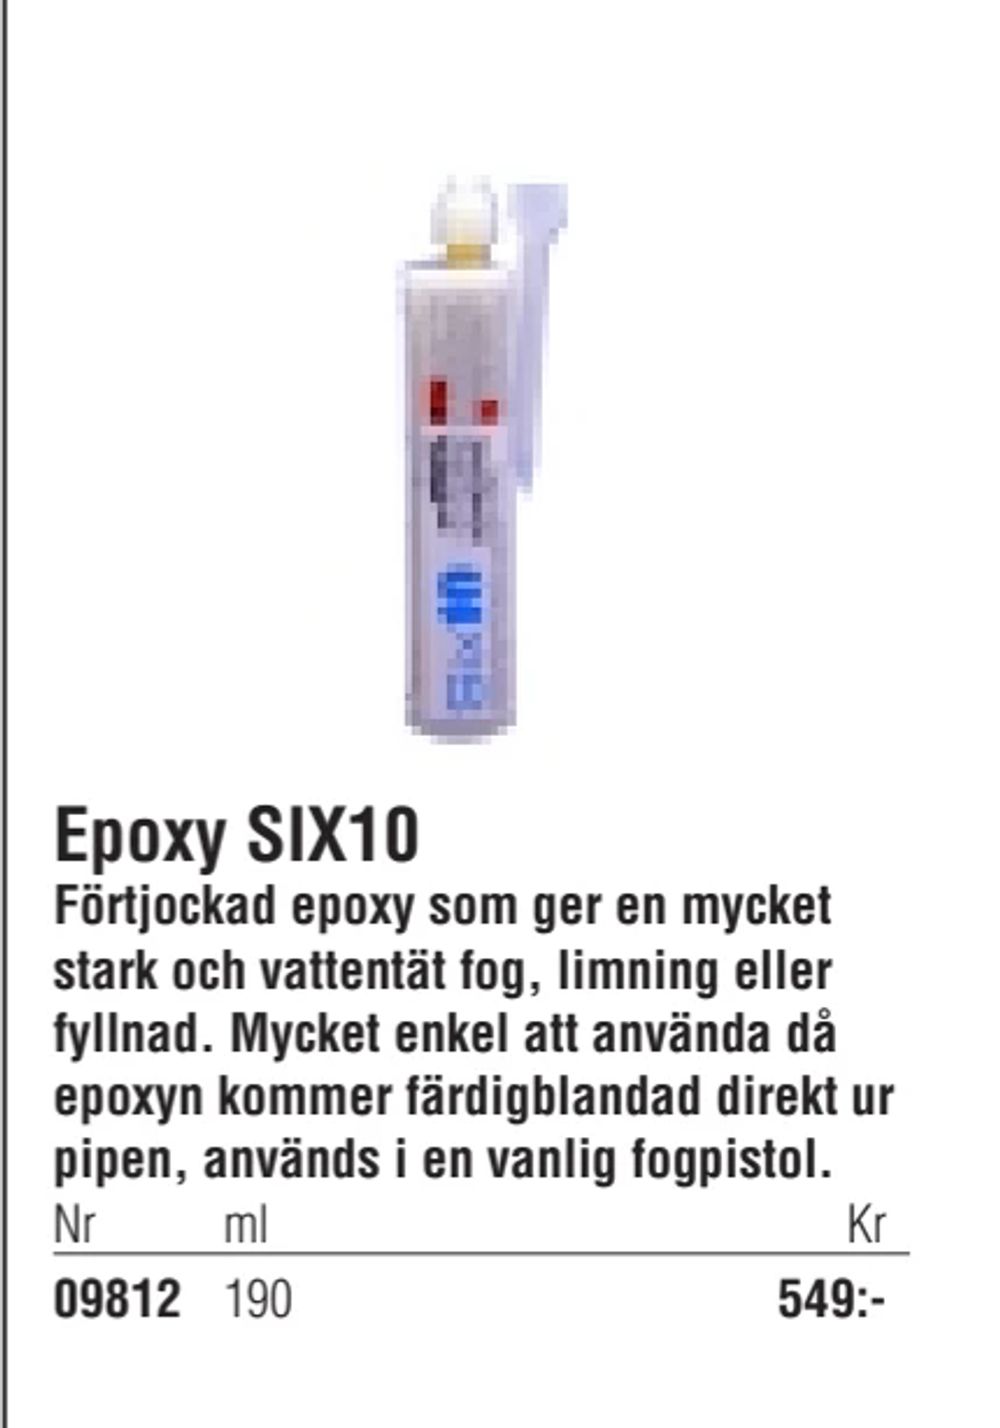 Erbjudanden på Epoxy SIX10 från Erlandsons Brygga för 549 kr